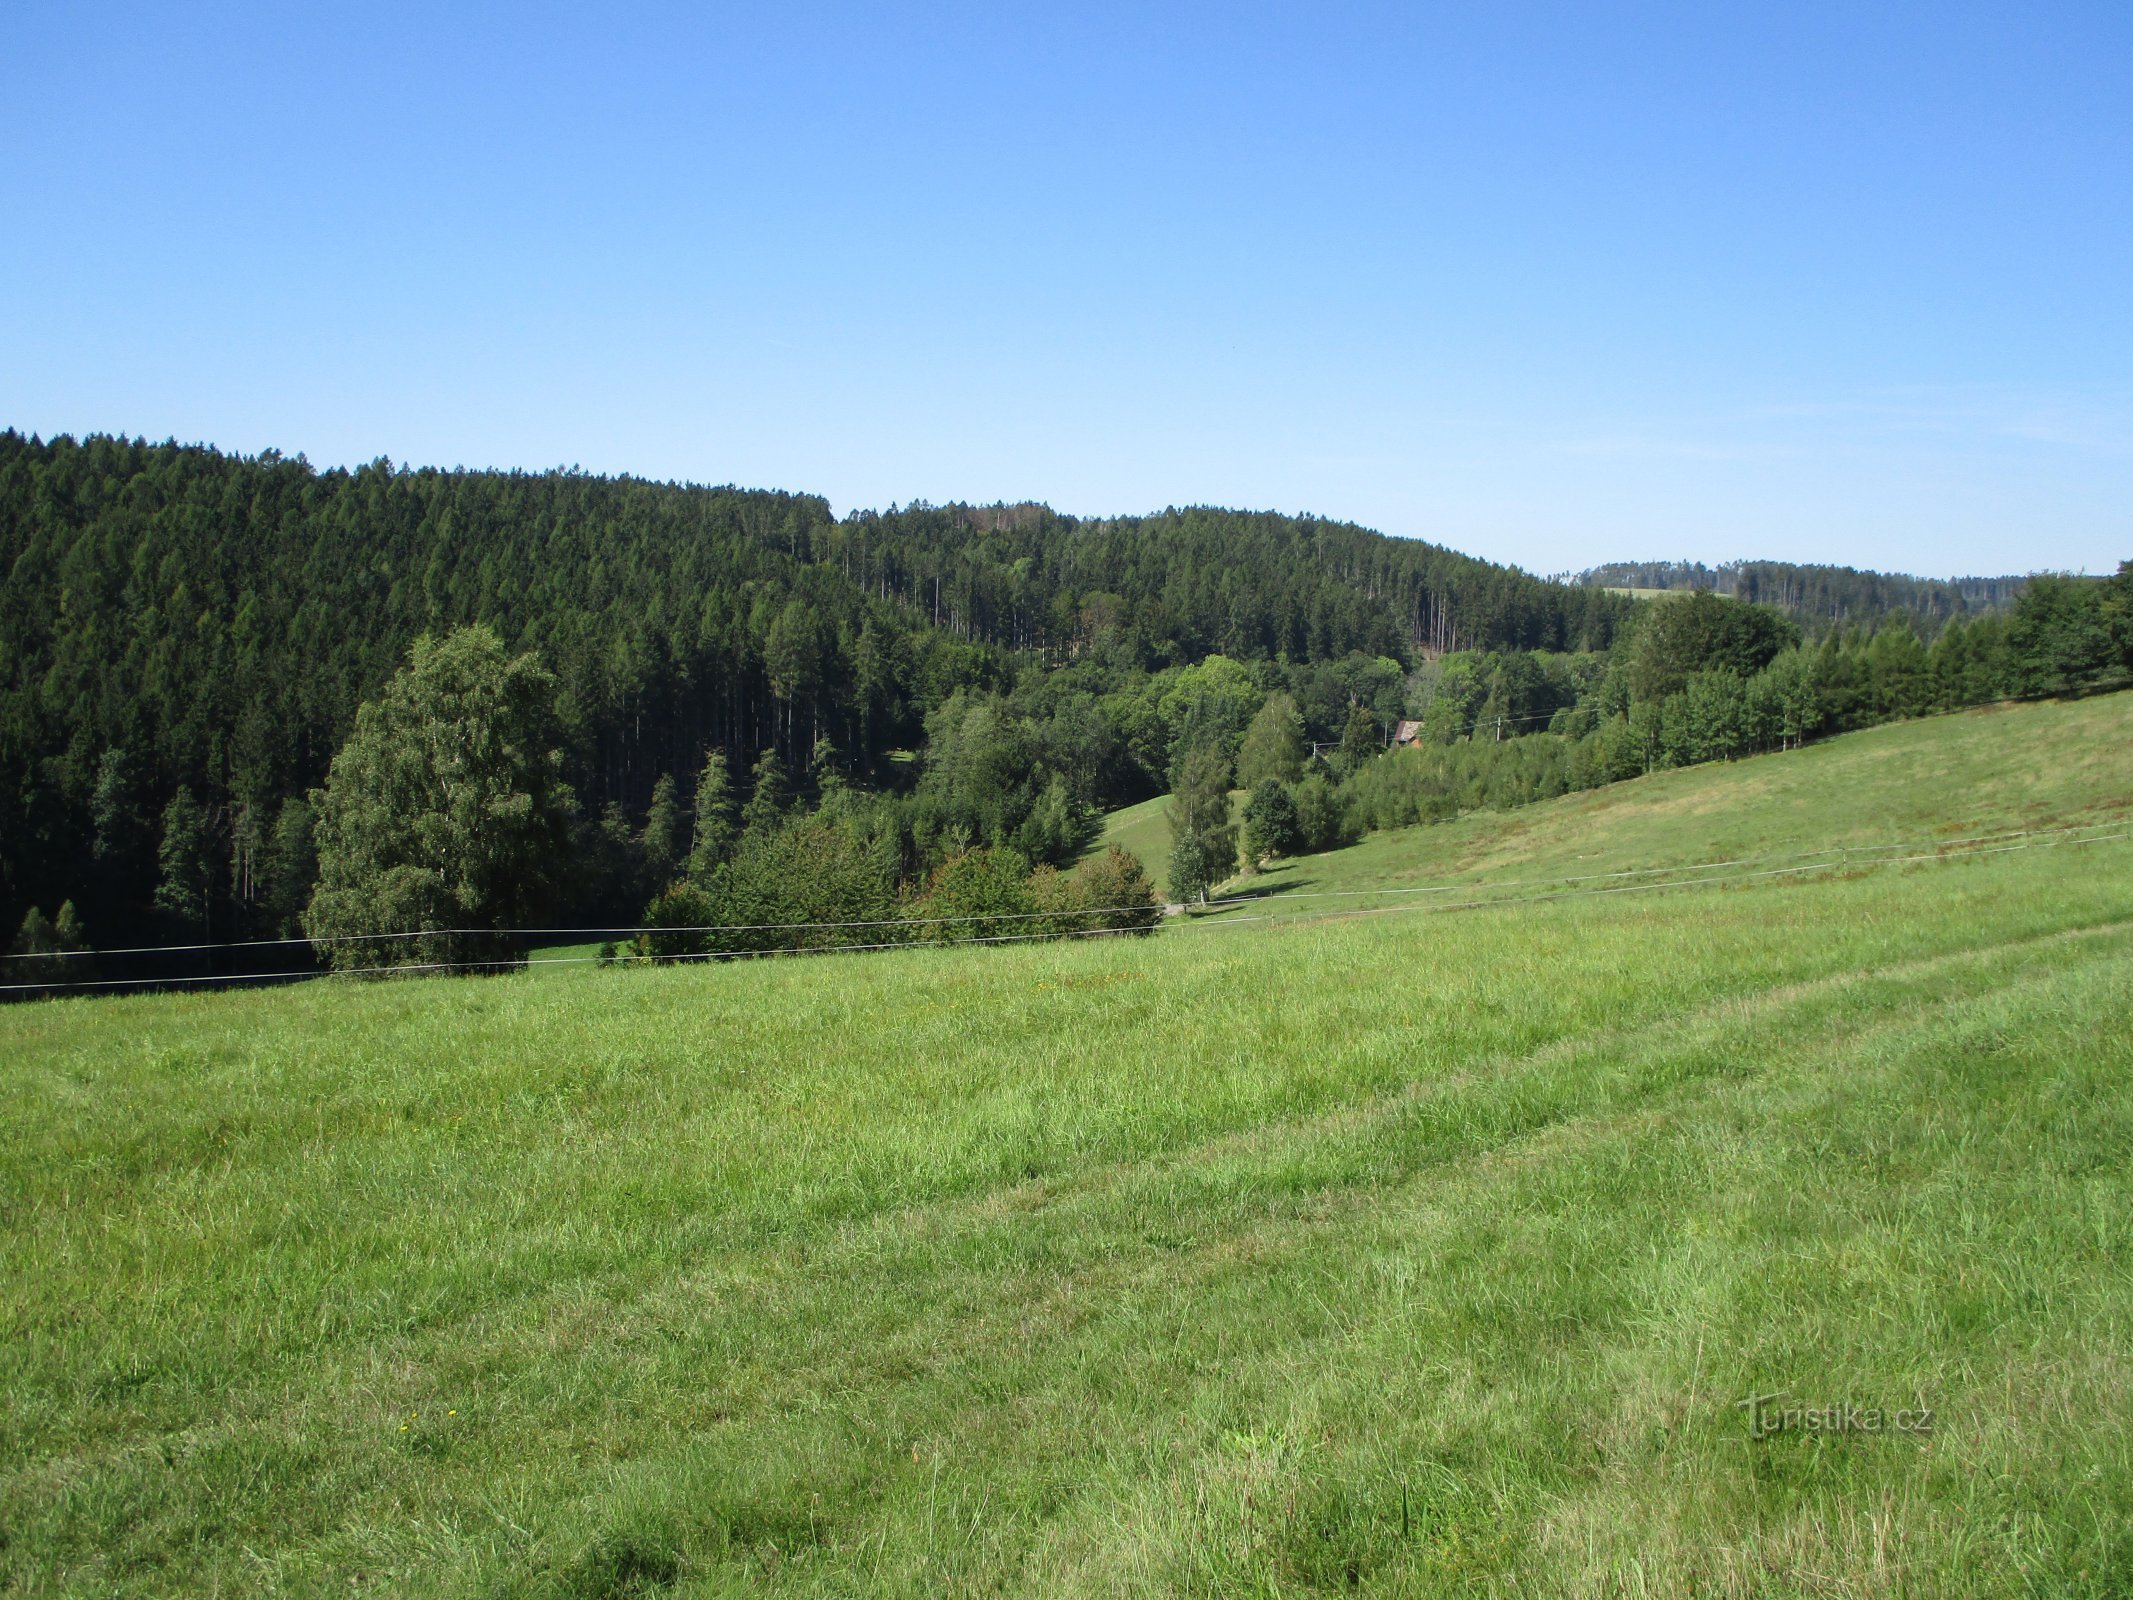 Harcovské údolí from the road from Brzice to Běluň (September 4.9.2019, XNUMX)